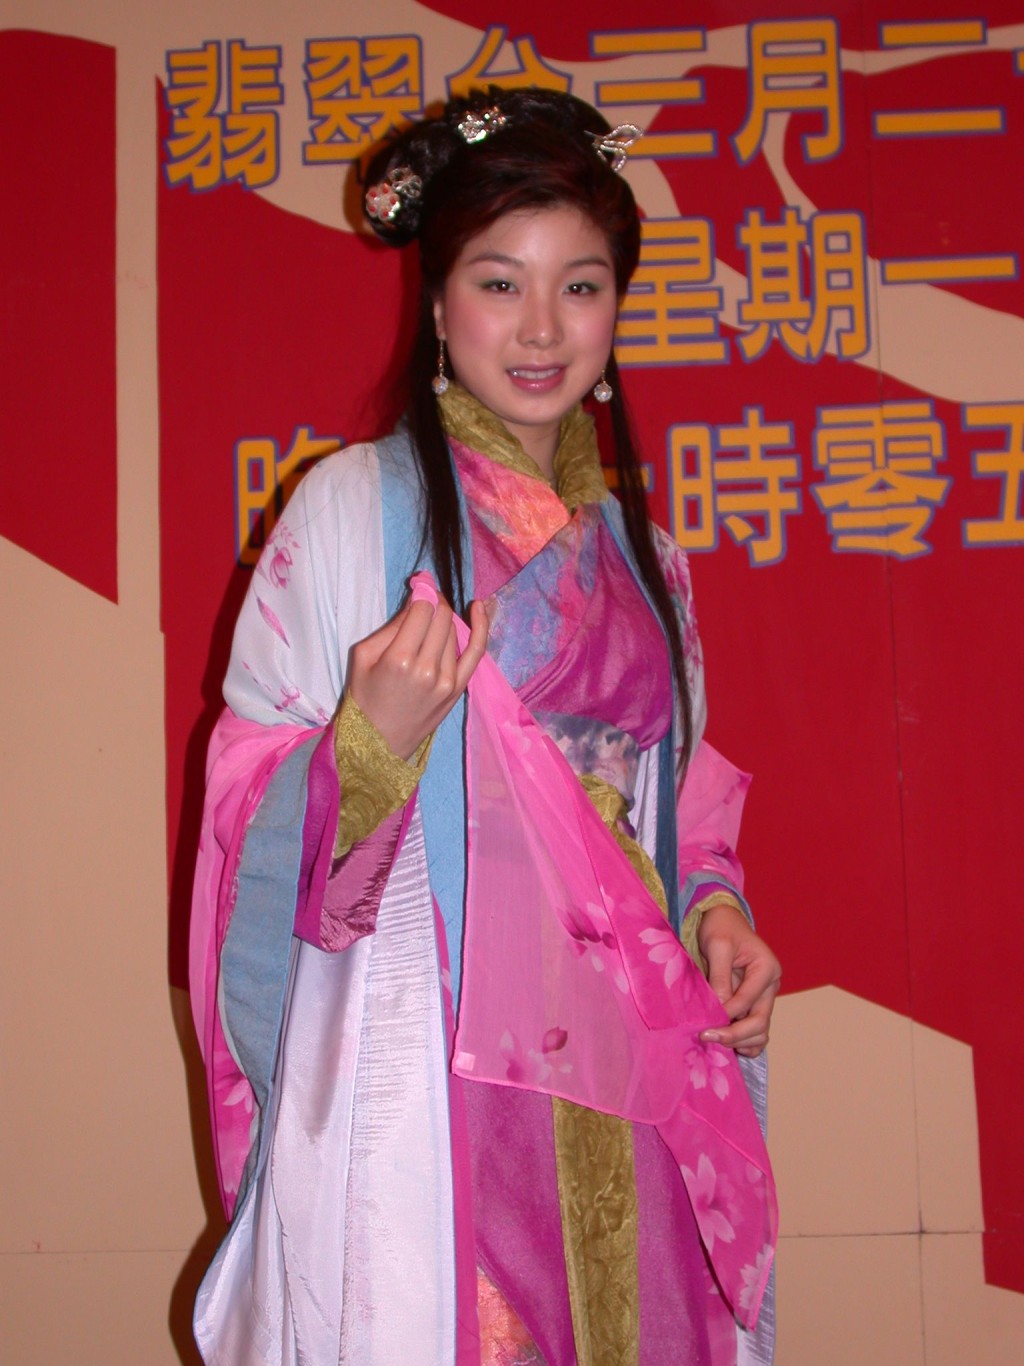 胡家惠簽約TVB後主要擔任主持工作。